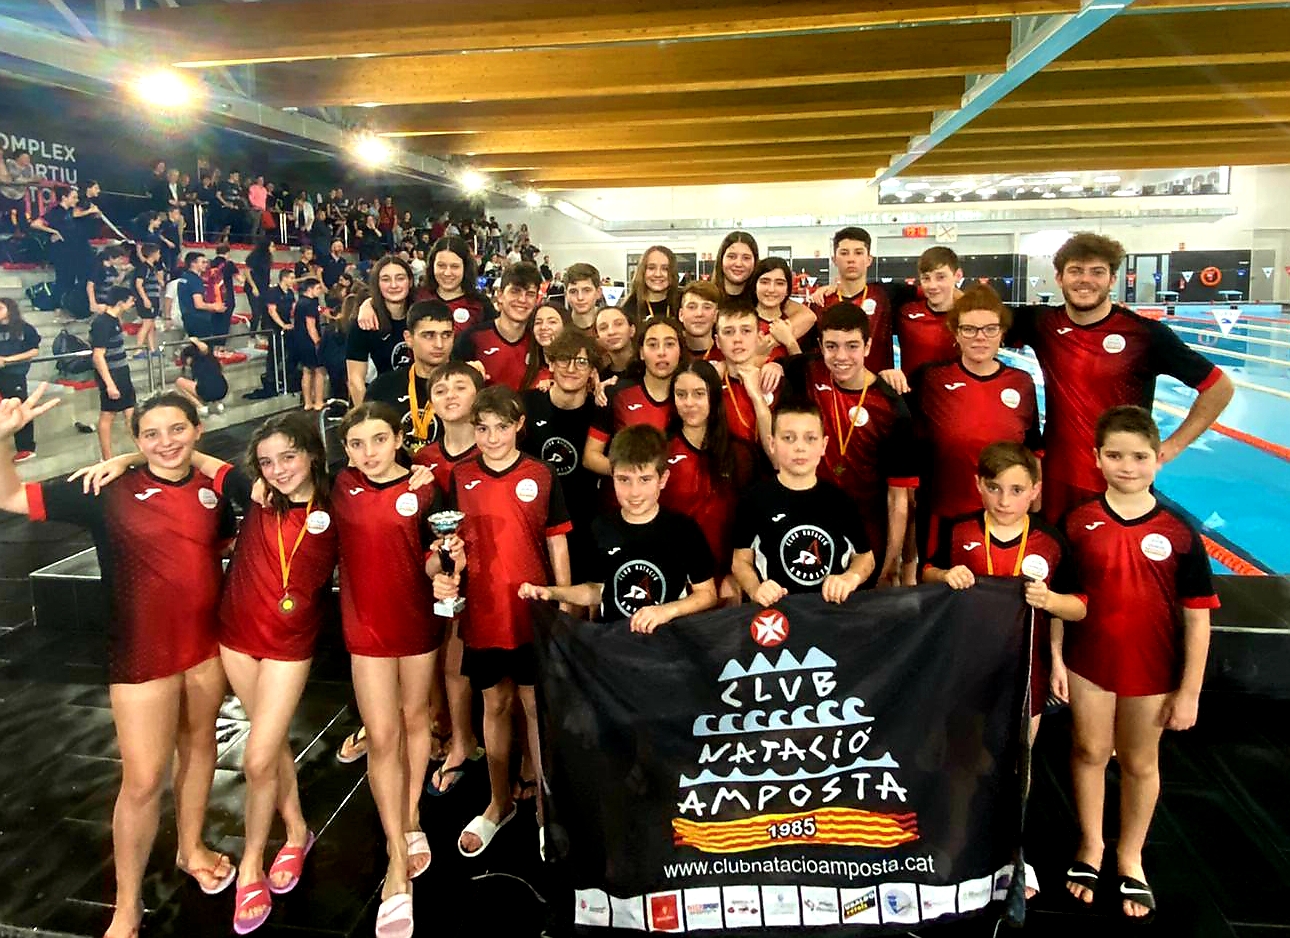 Campionat Provincial de Natació Delegació Tarragona 2020 al Complex Esportiu Win Tortosa.